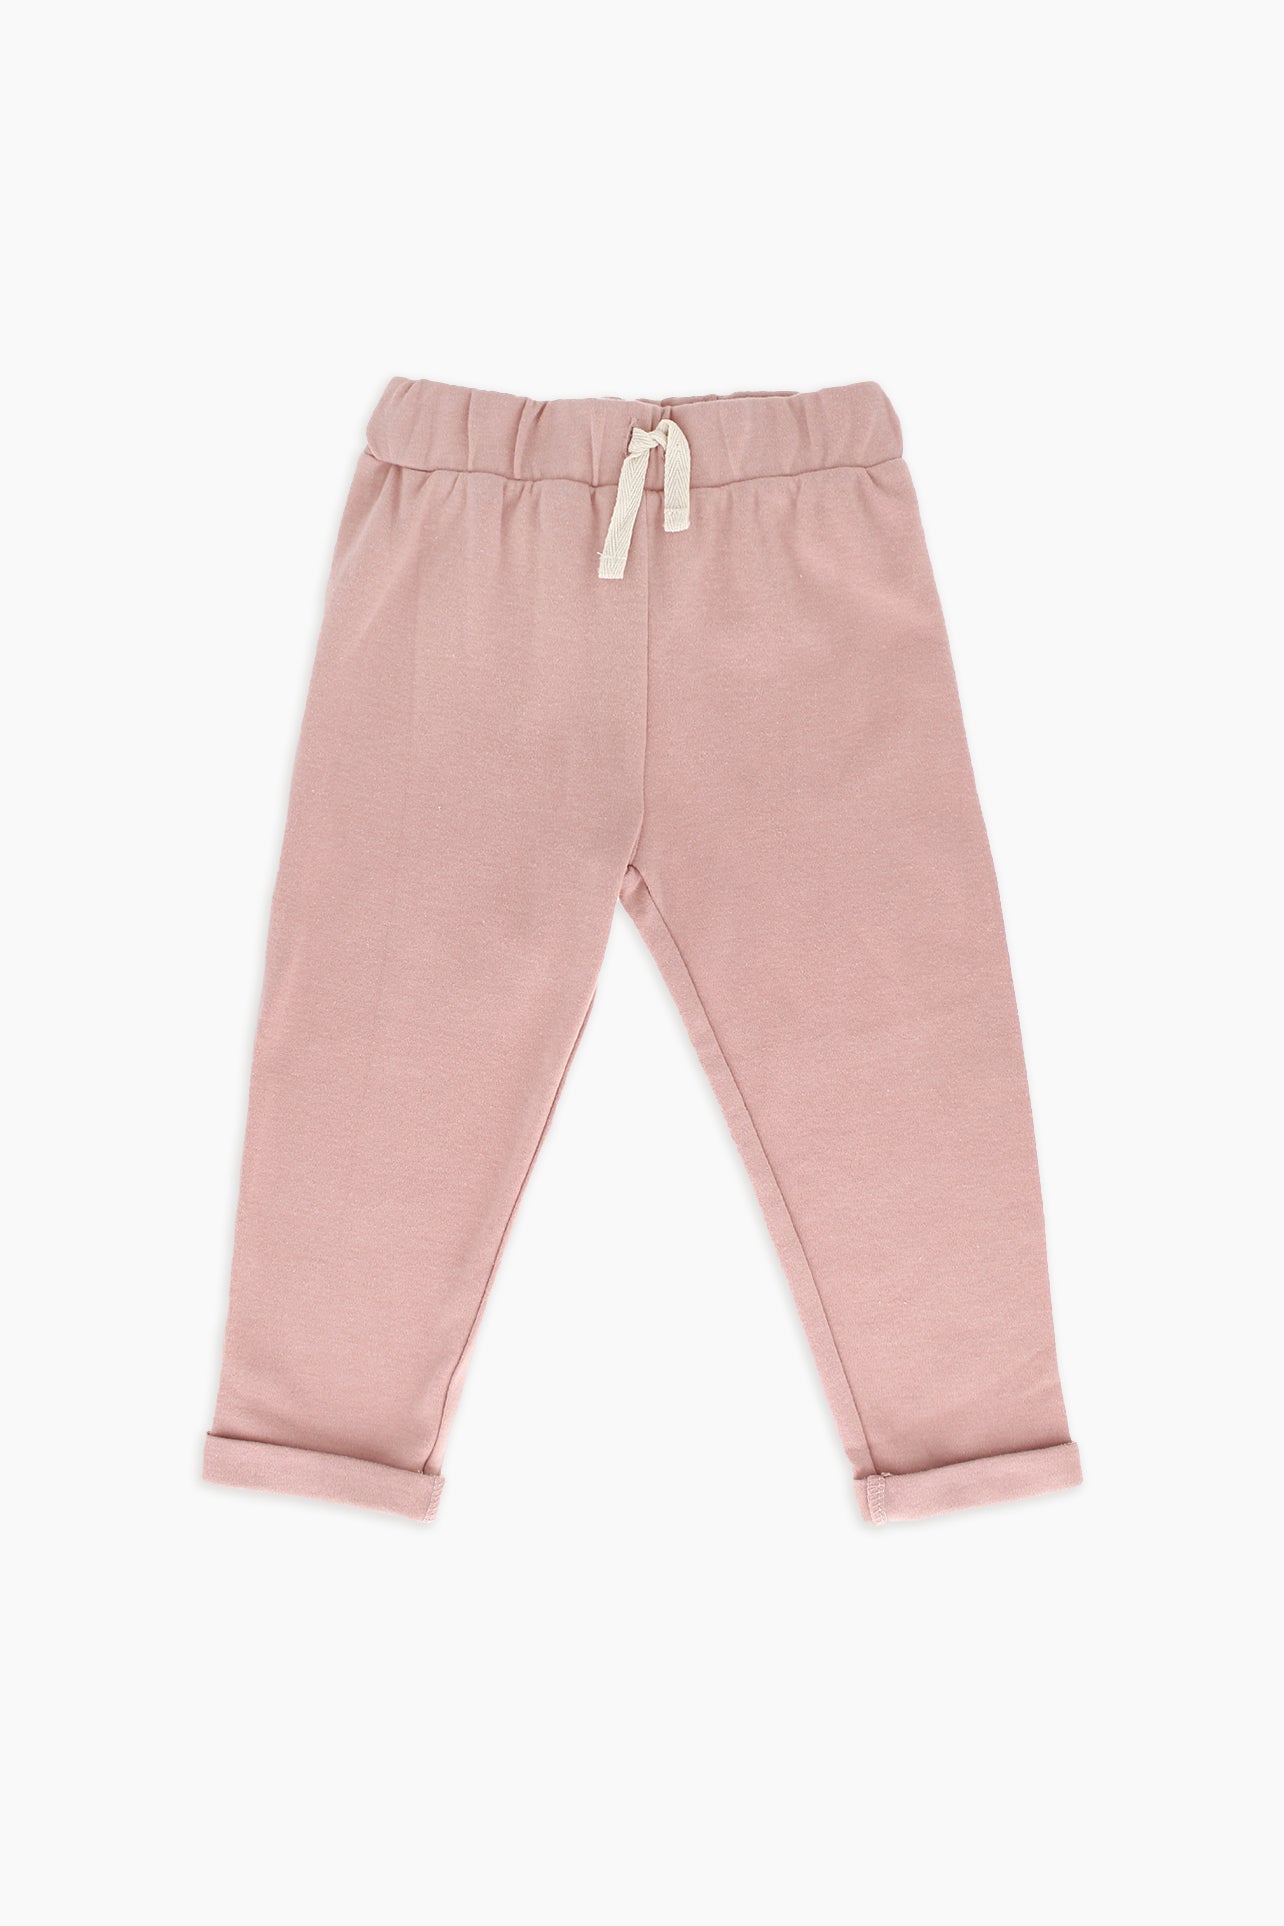 Snugabye Organic Cotton Toddler Turned-Cuff Pants